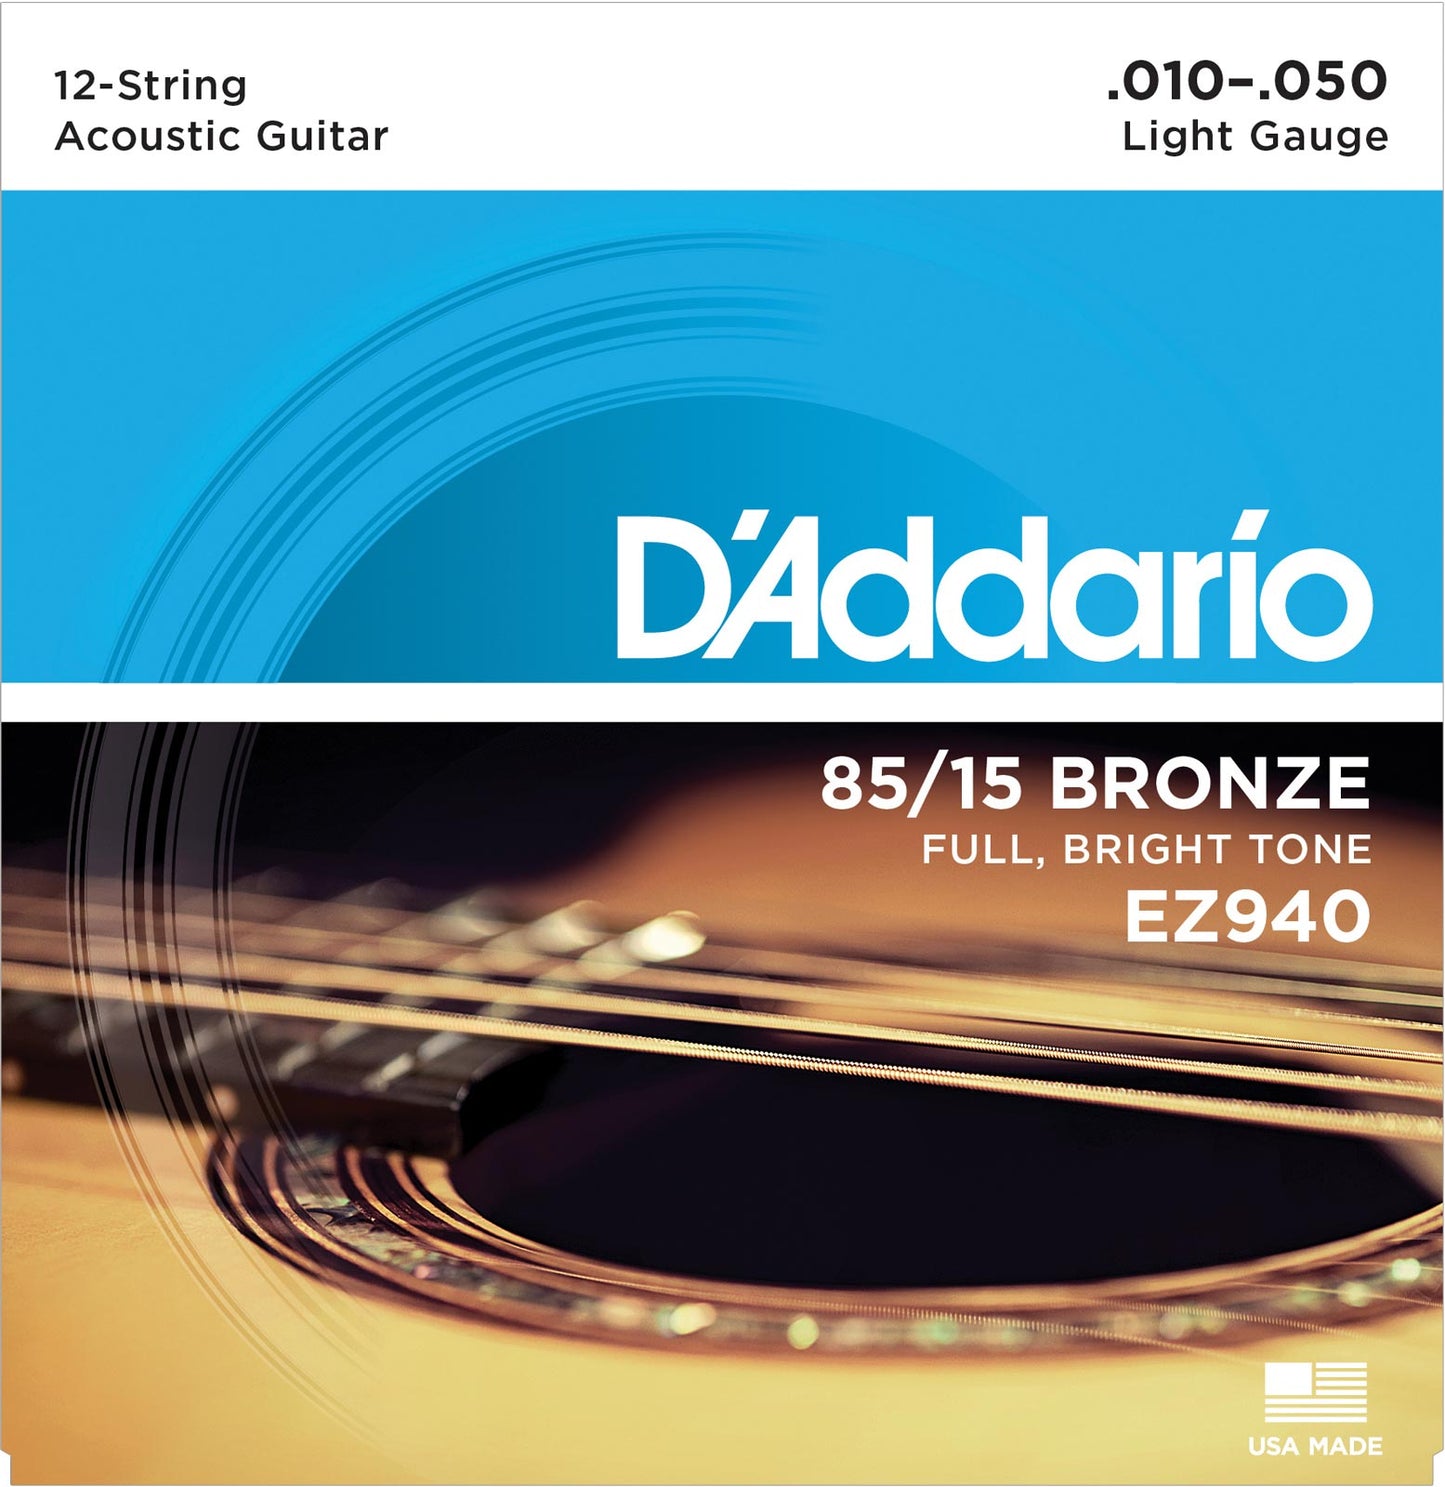 D'addario Original Authentic 85/15 Bronze Acoustic Guitar Strings